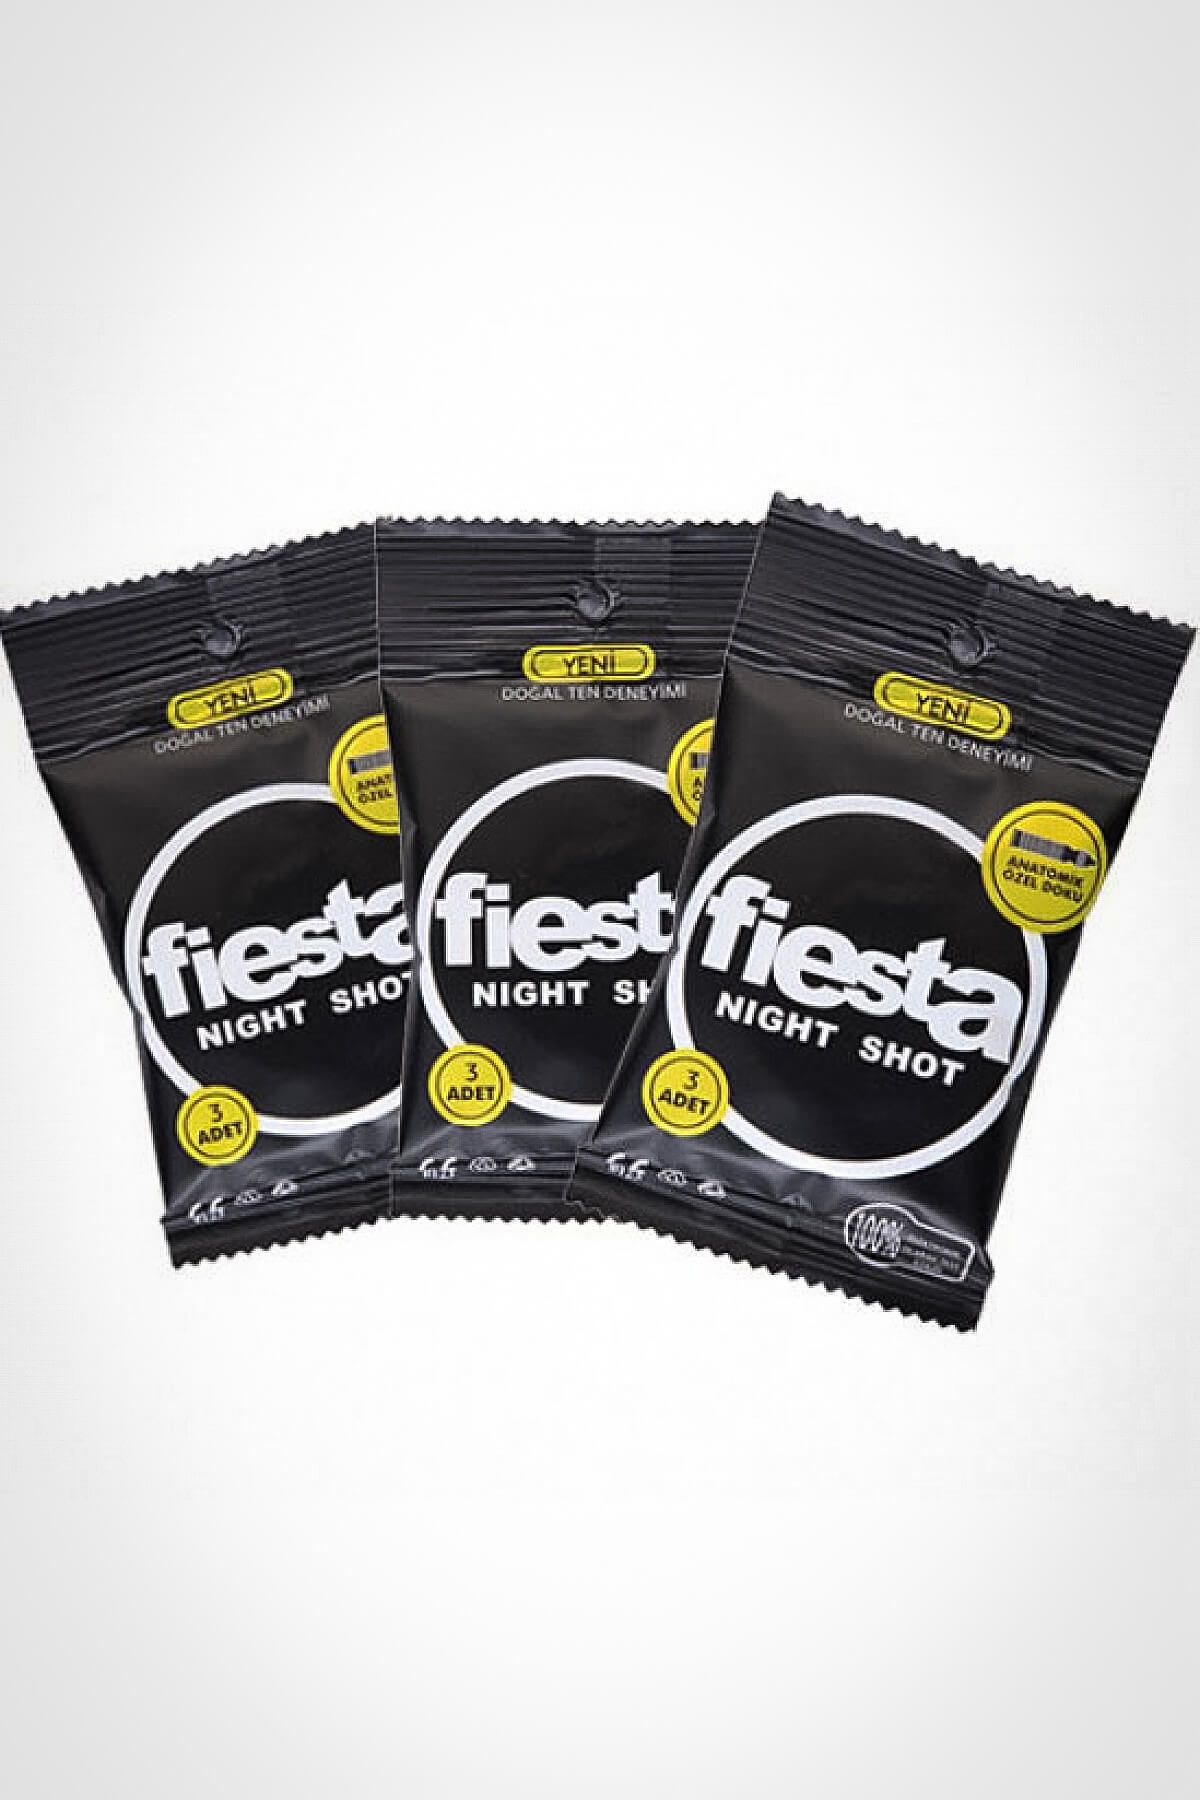 Fiesta Prezervatif Nıght Shot 3X3 Cep Paket Condom